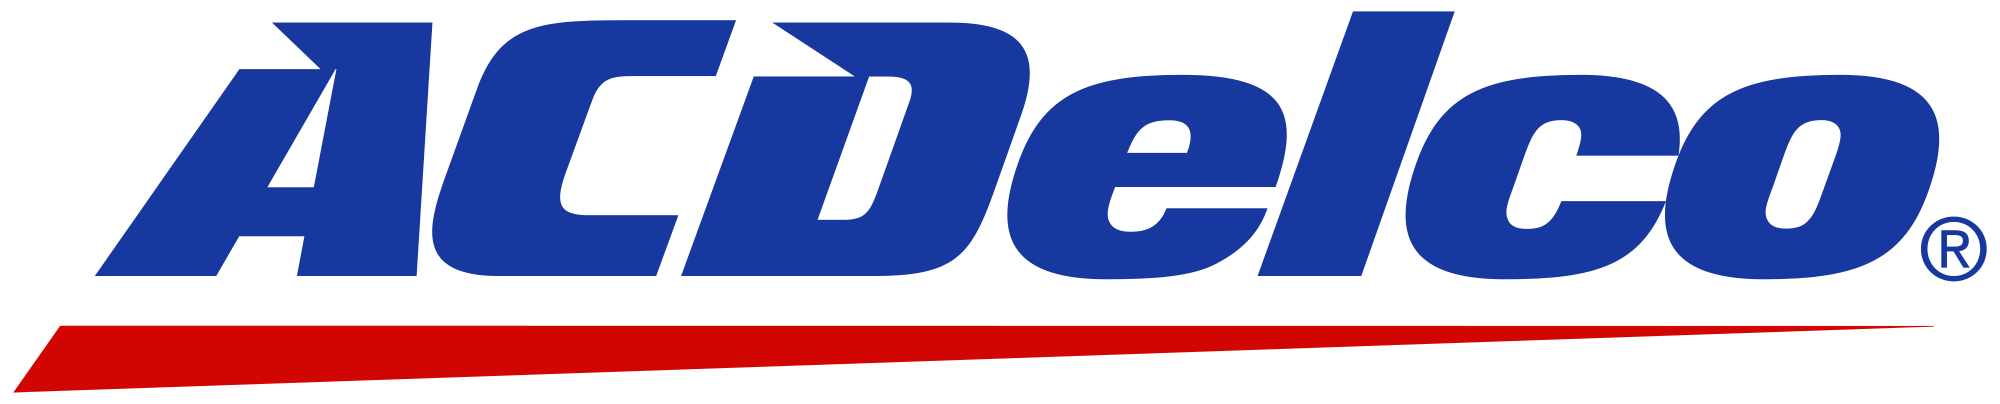 Логотип ACDELCO